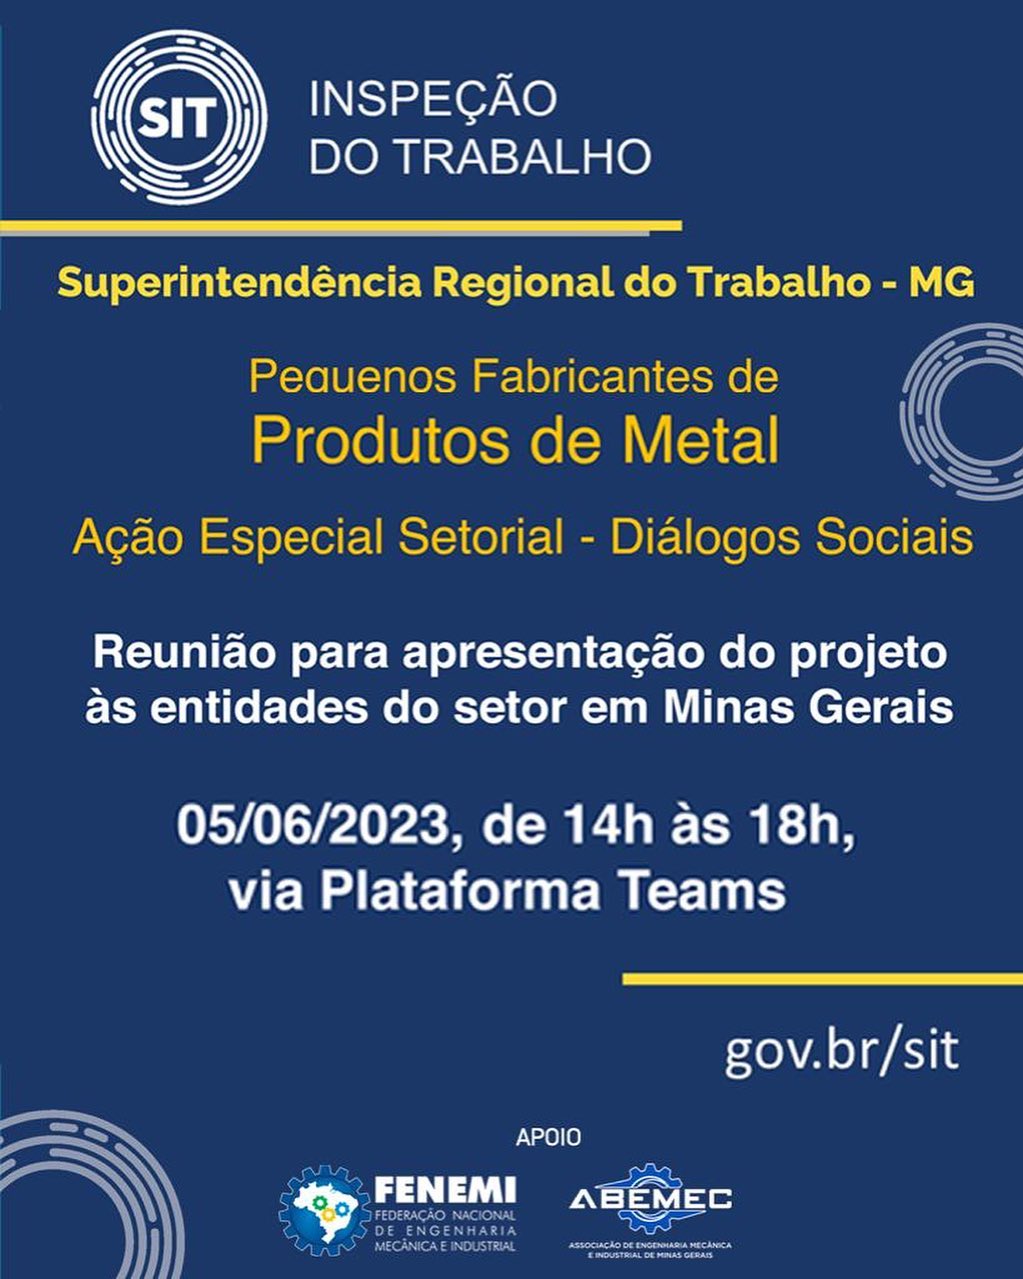 É hoje! Live com a Superintendência Regional do Trabalho de Minas Gerais para apresentação de propostas para entidades do setor industrial. ACESSE: gov.br/sit